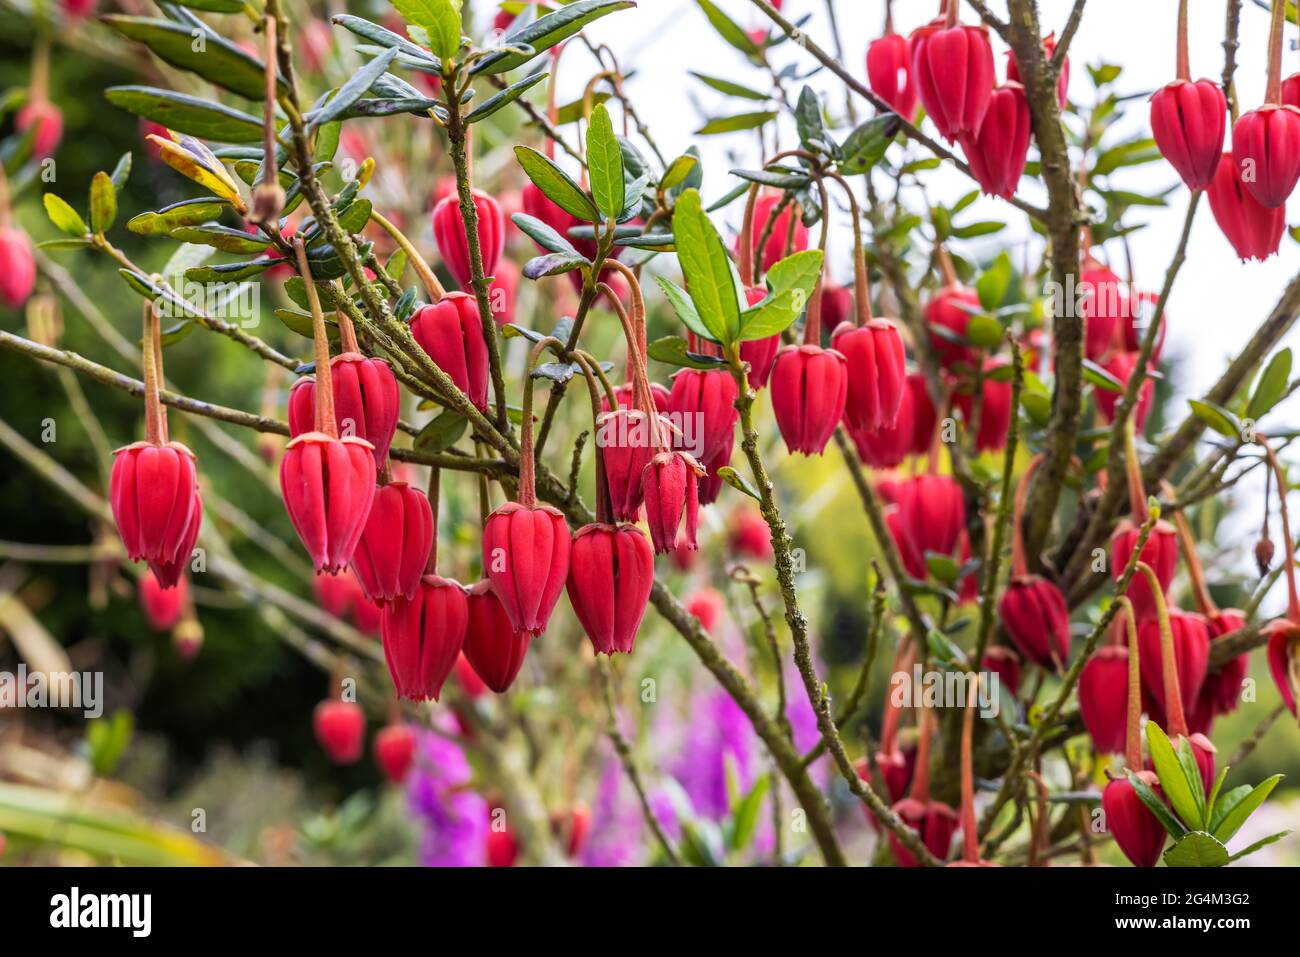 Laternenförmige, purpurrote Blüten des chilenischen Laternenbaums Crinodendron hookerianum, der in einem englischen Garten wächst. Stockfoto